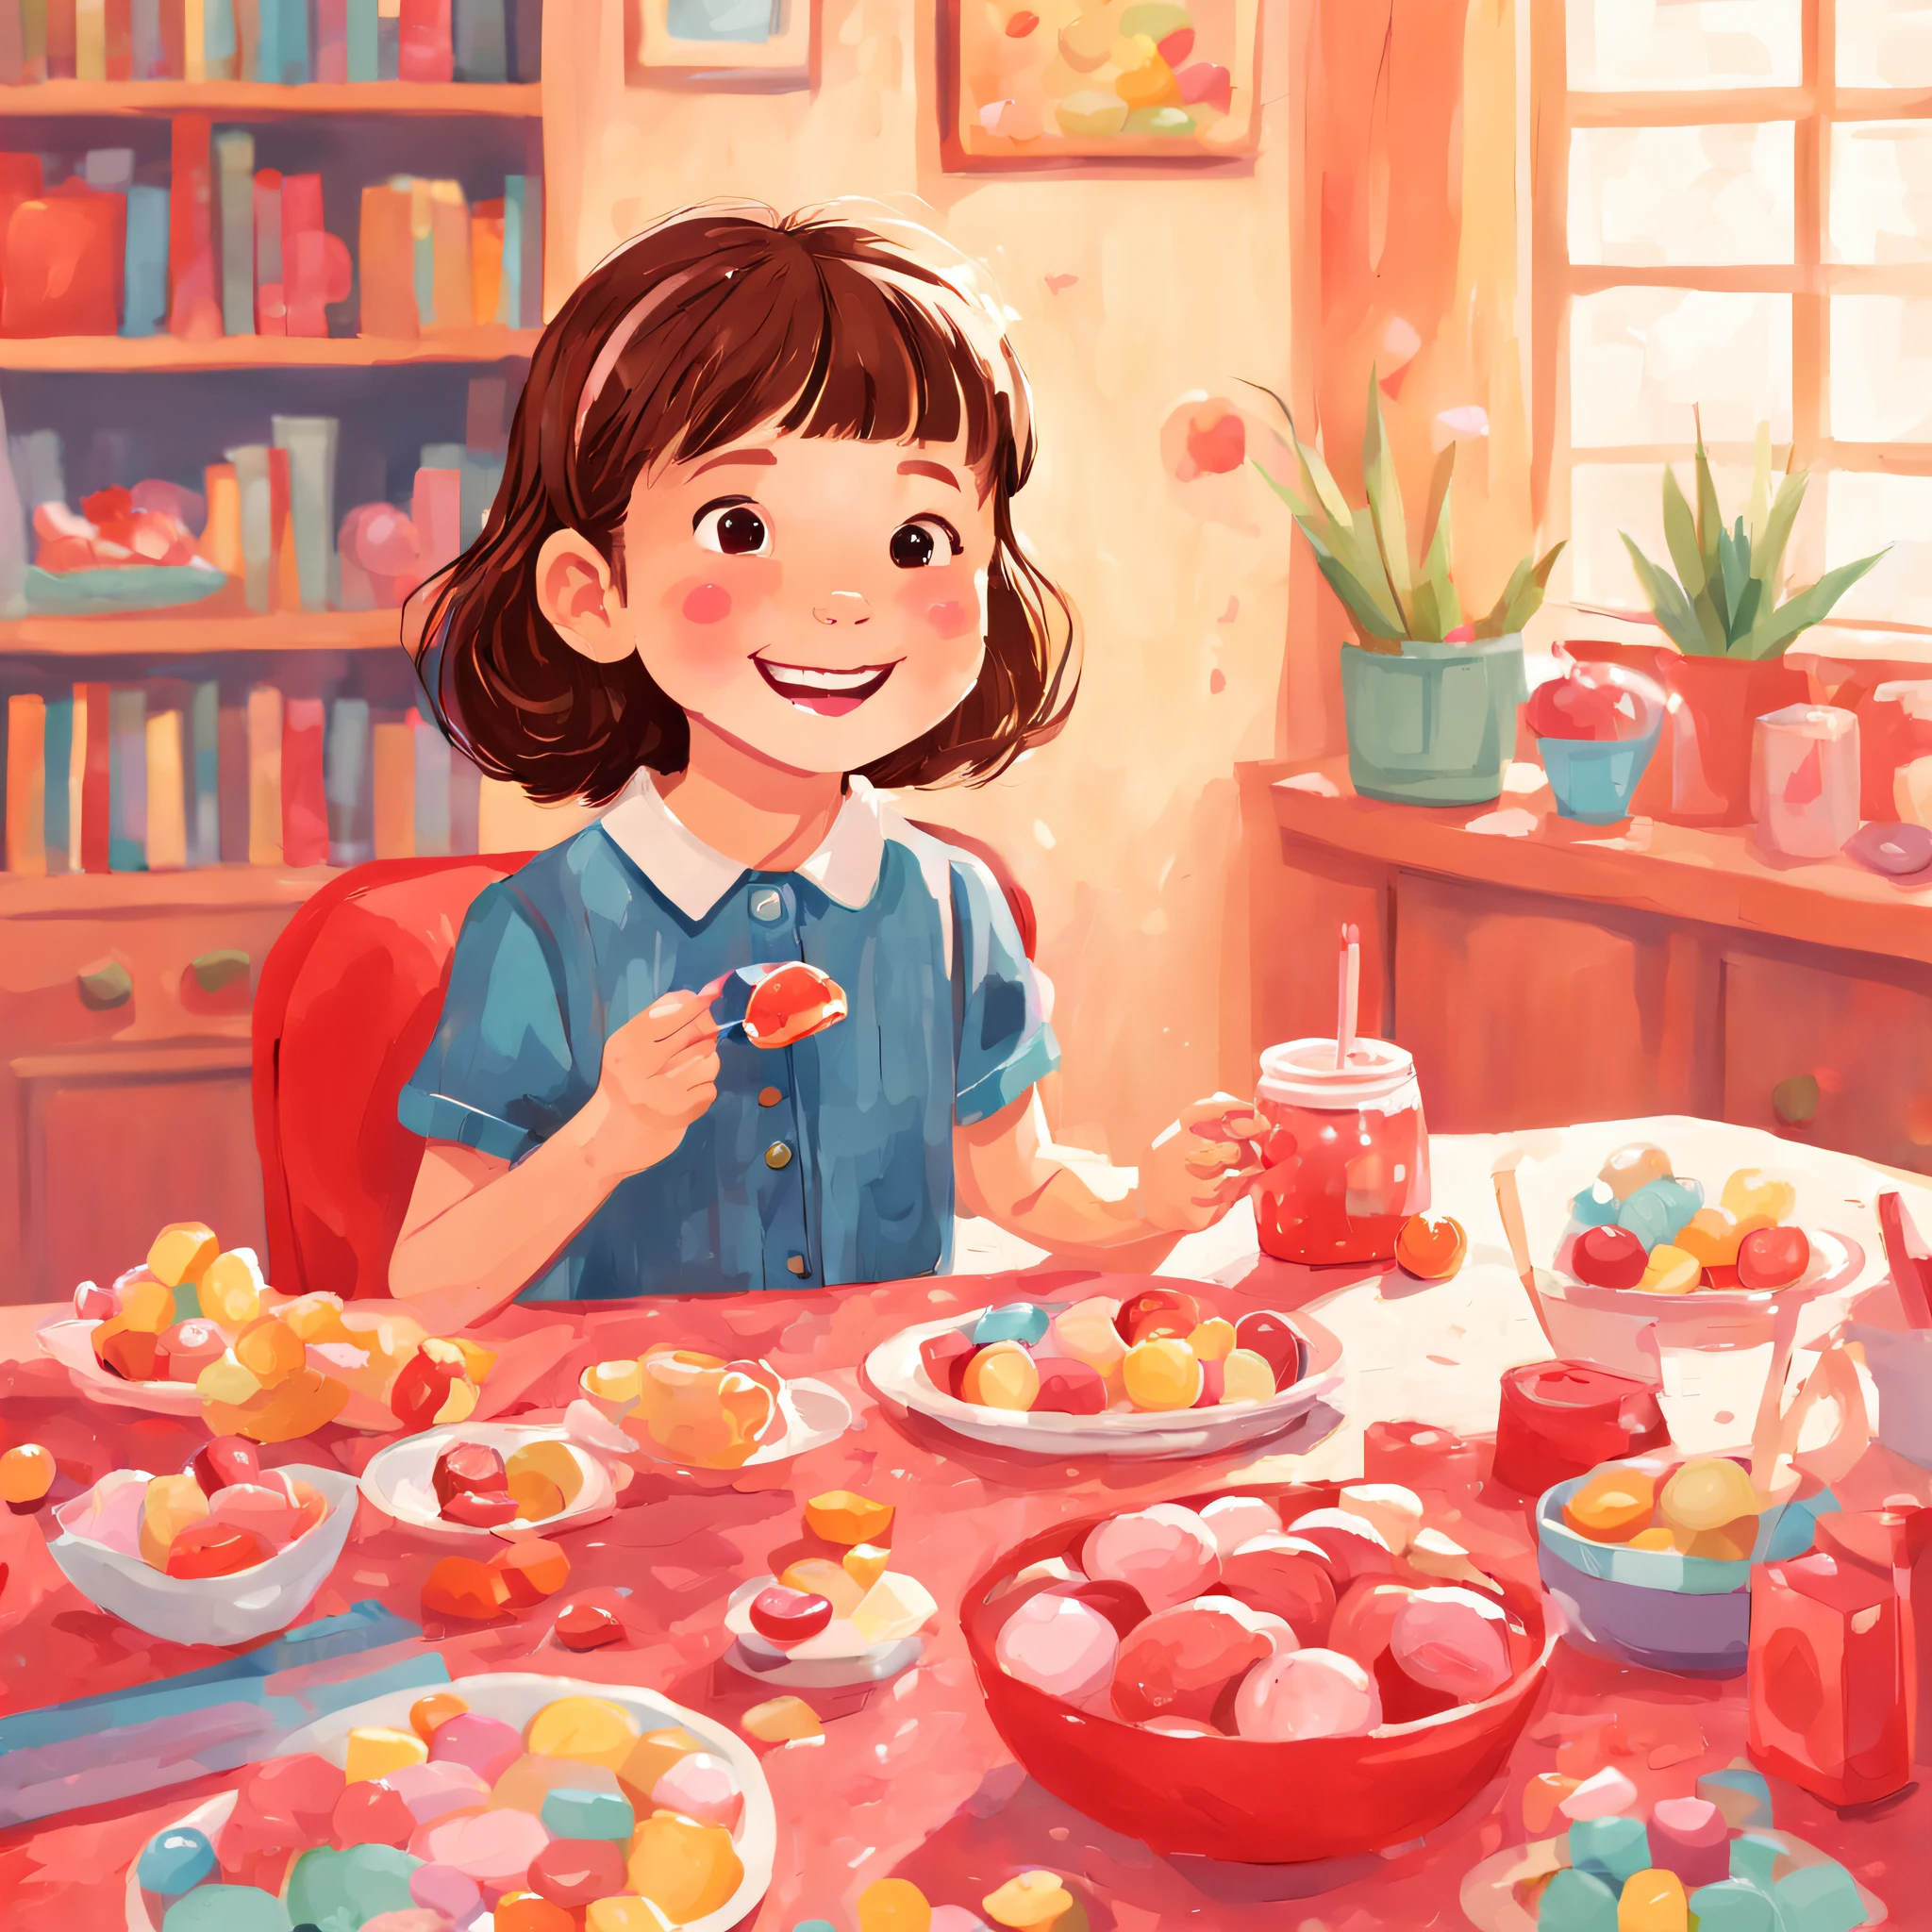 교육 아동 도서의 그림, 기본 색상 팔레트, 사탕을 먹고 있는 귀여운 8살 소녀，행복과 만족의 미소，배경은 실내，테이블 위에 과자가 잔뜩 있었어요，아동서, 어린이용 레드 모델,